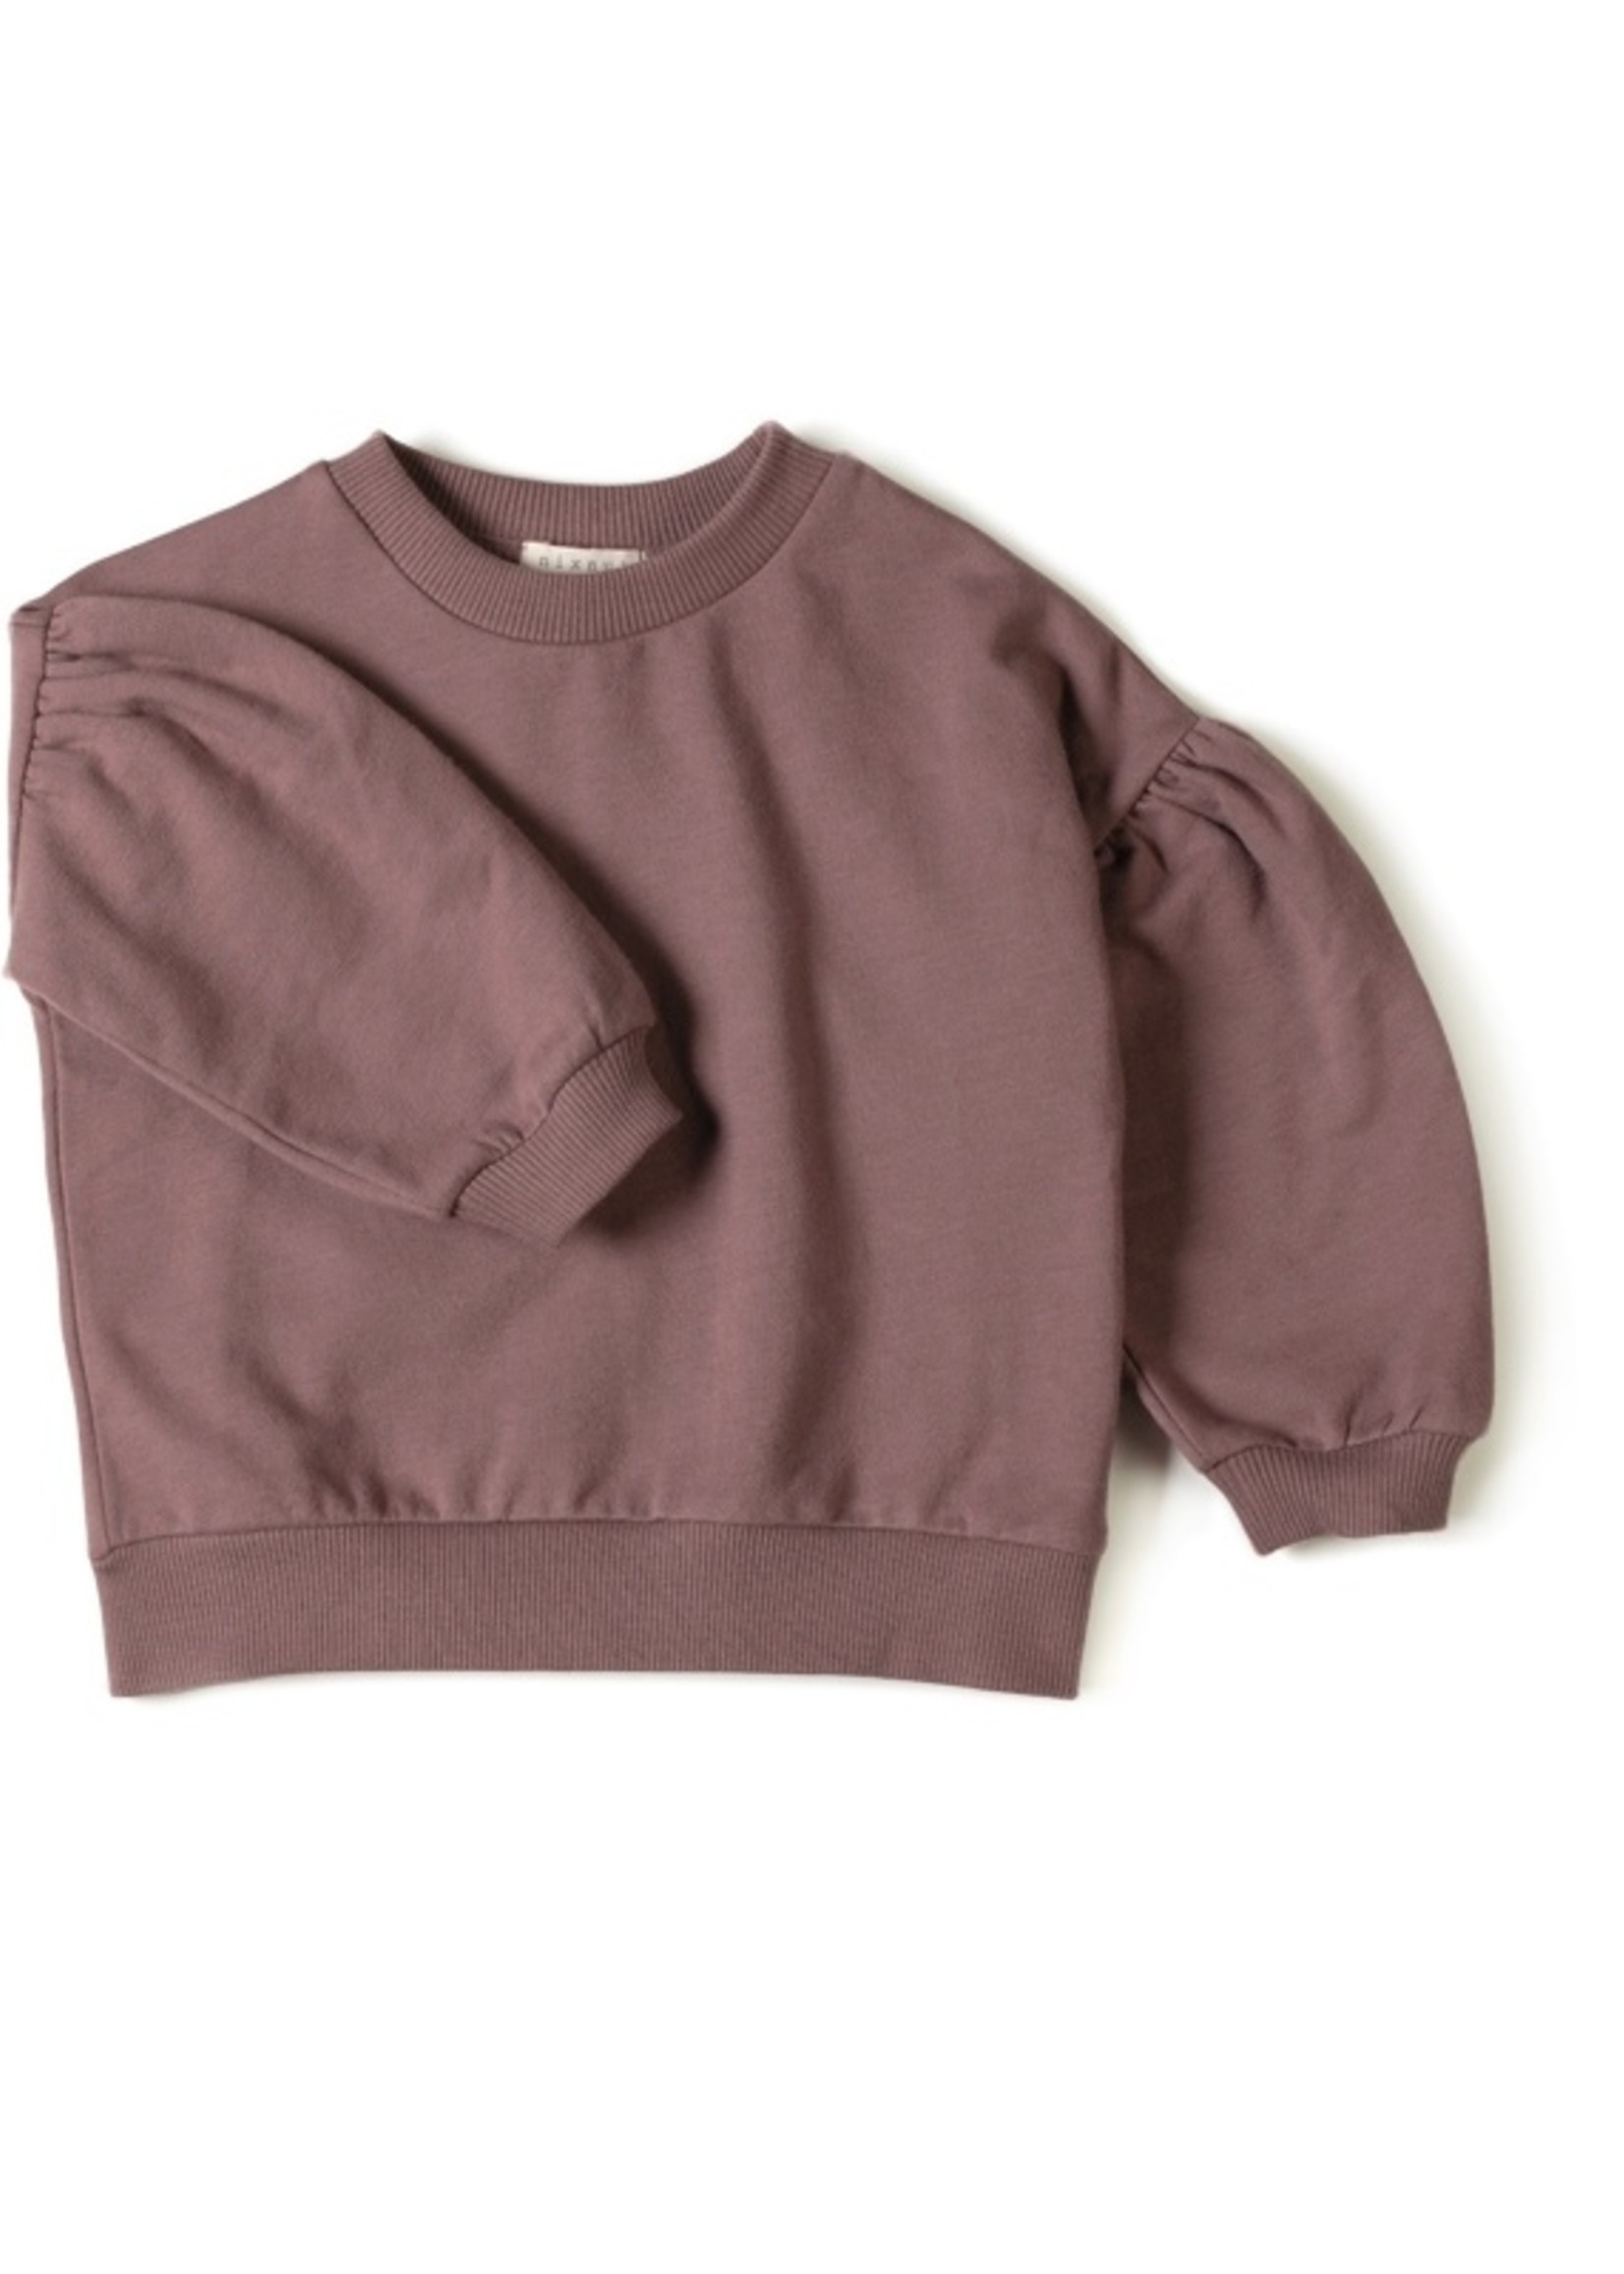 Nixnut Lux Sweater - Mauve